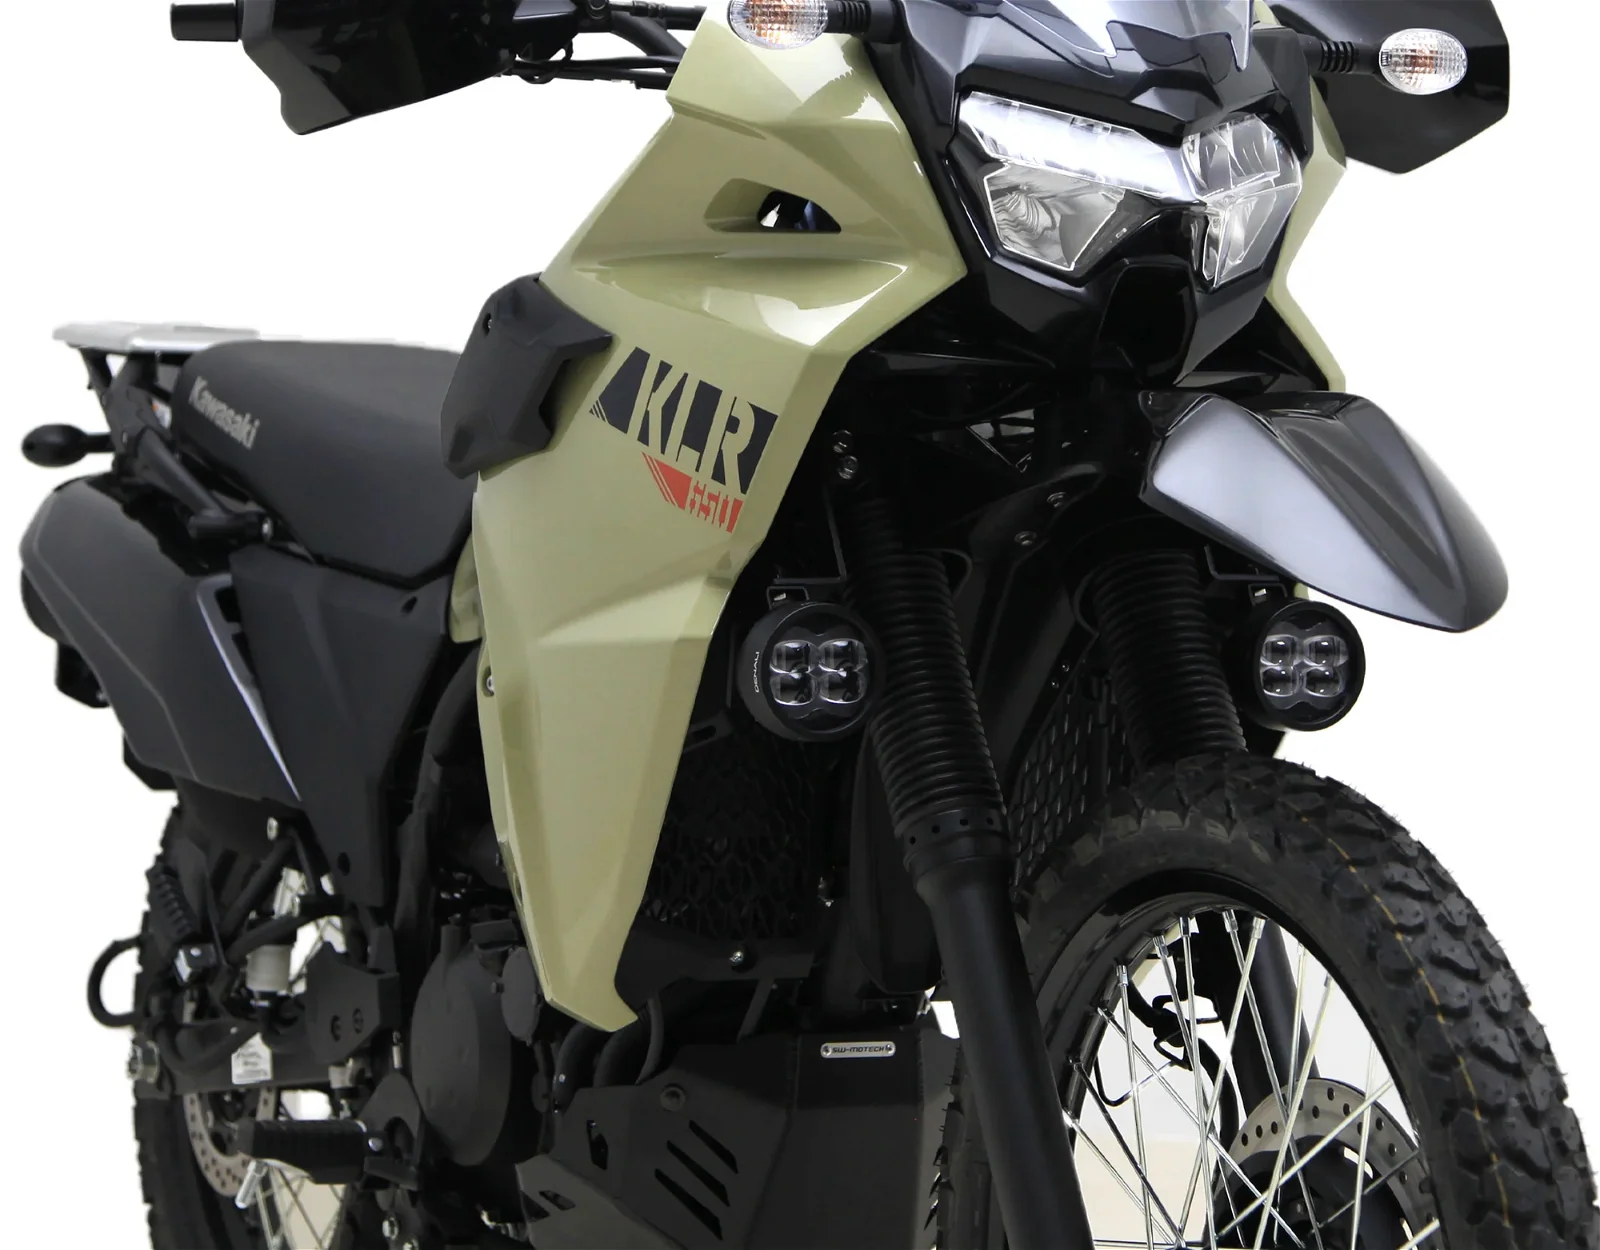 Supporti montaggio faretti anteriori per Kawasaki KLR650 '22- DENALI LAH.08.10700